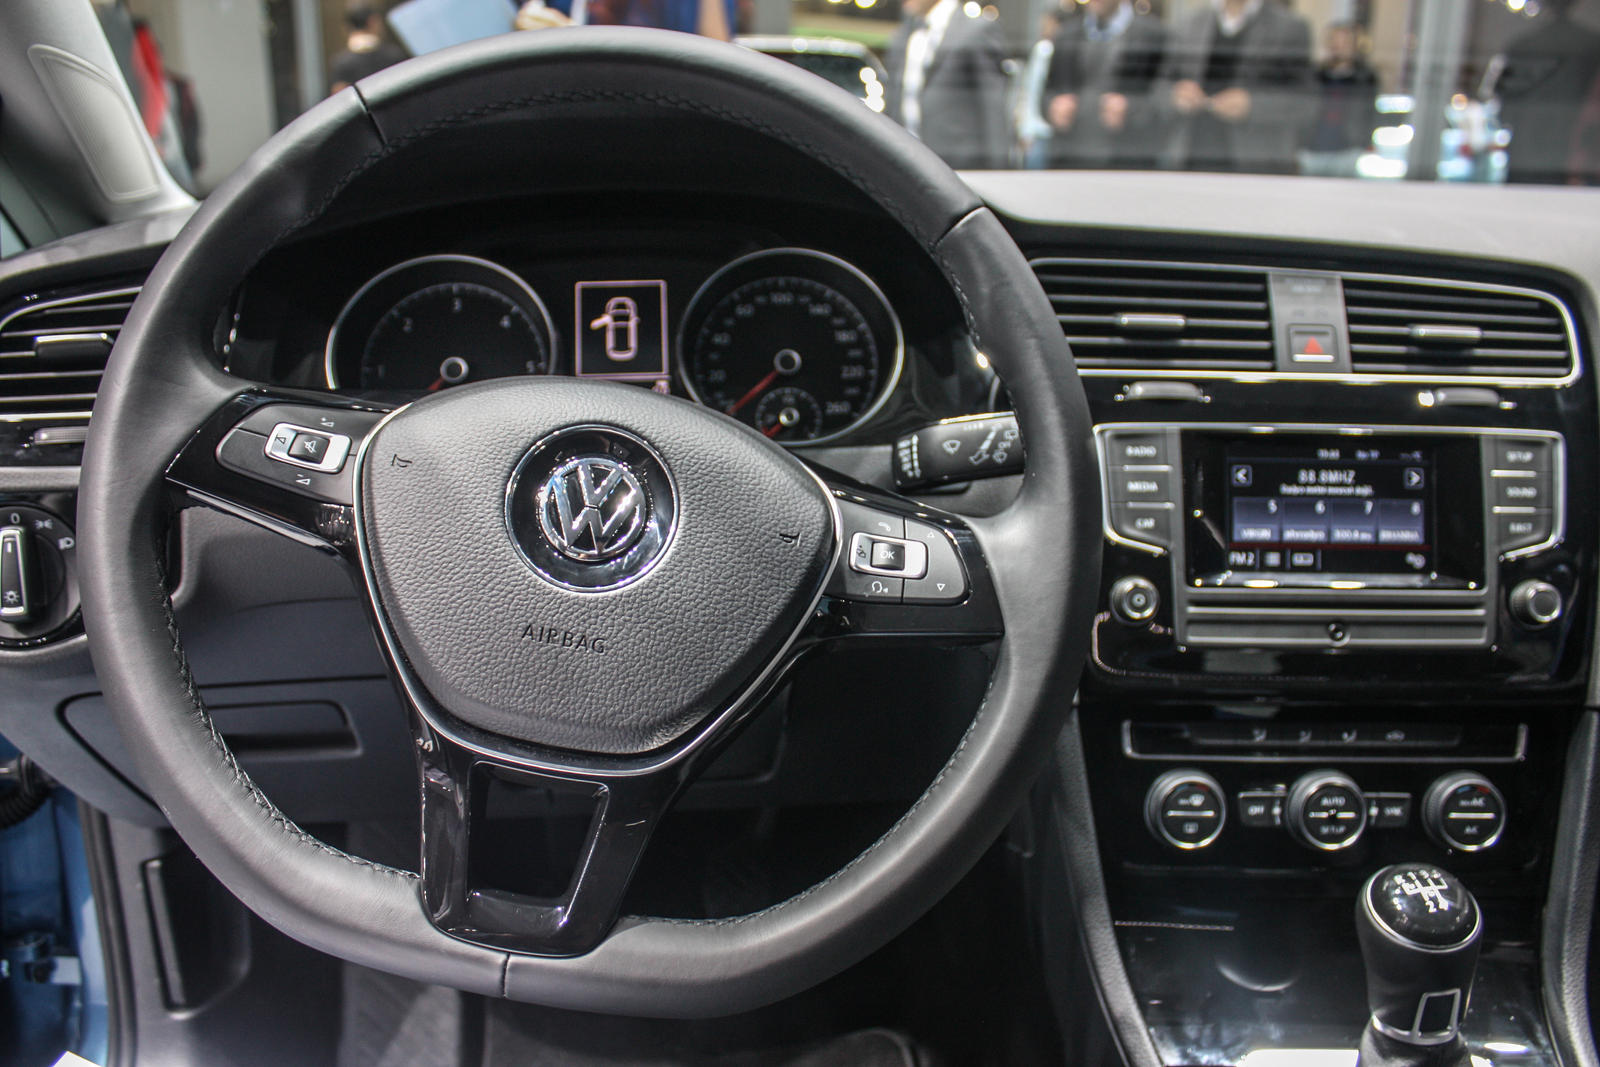 kaart pepermunt Tips 2013 Volkswagen Golf VII Interior by seznur on DeviantArt